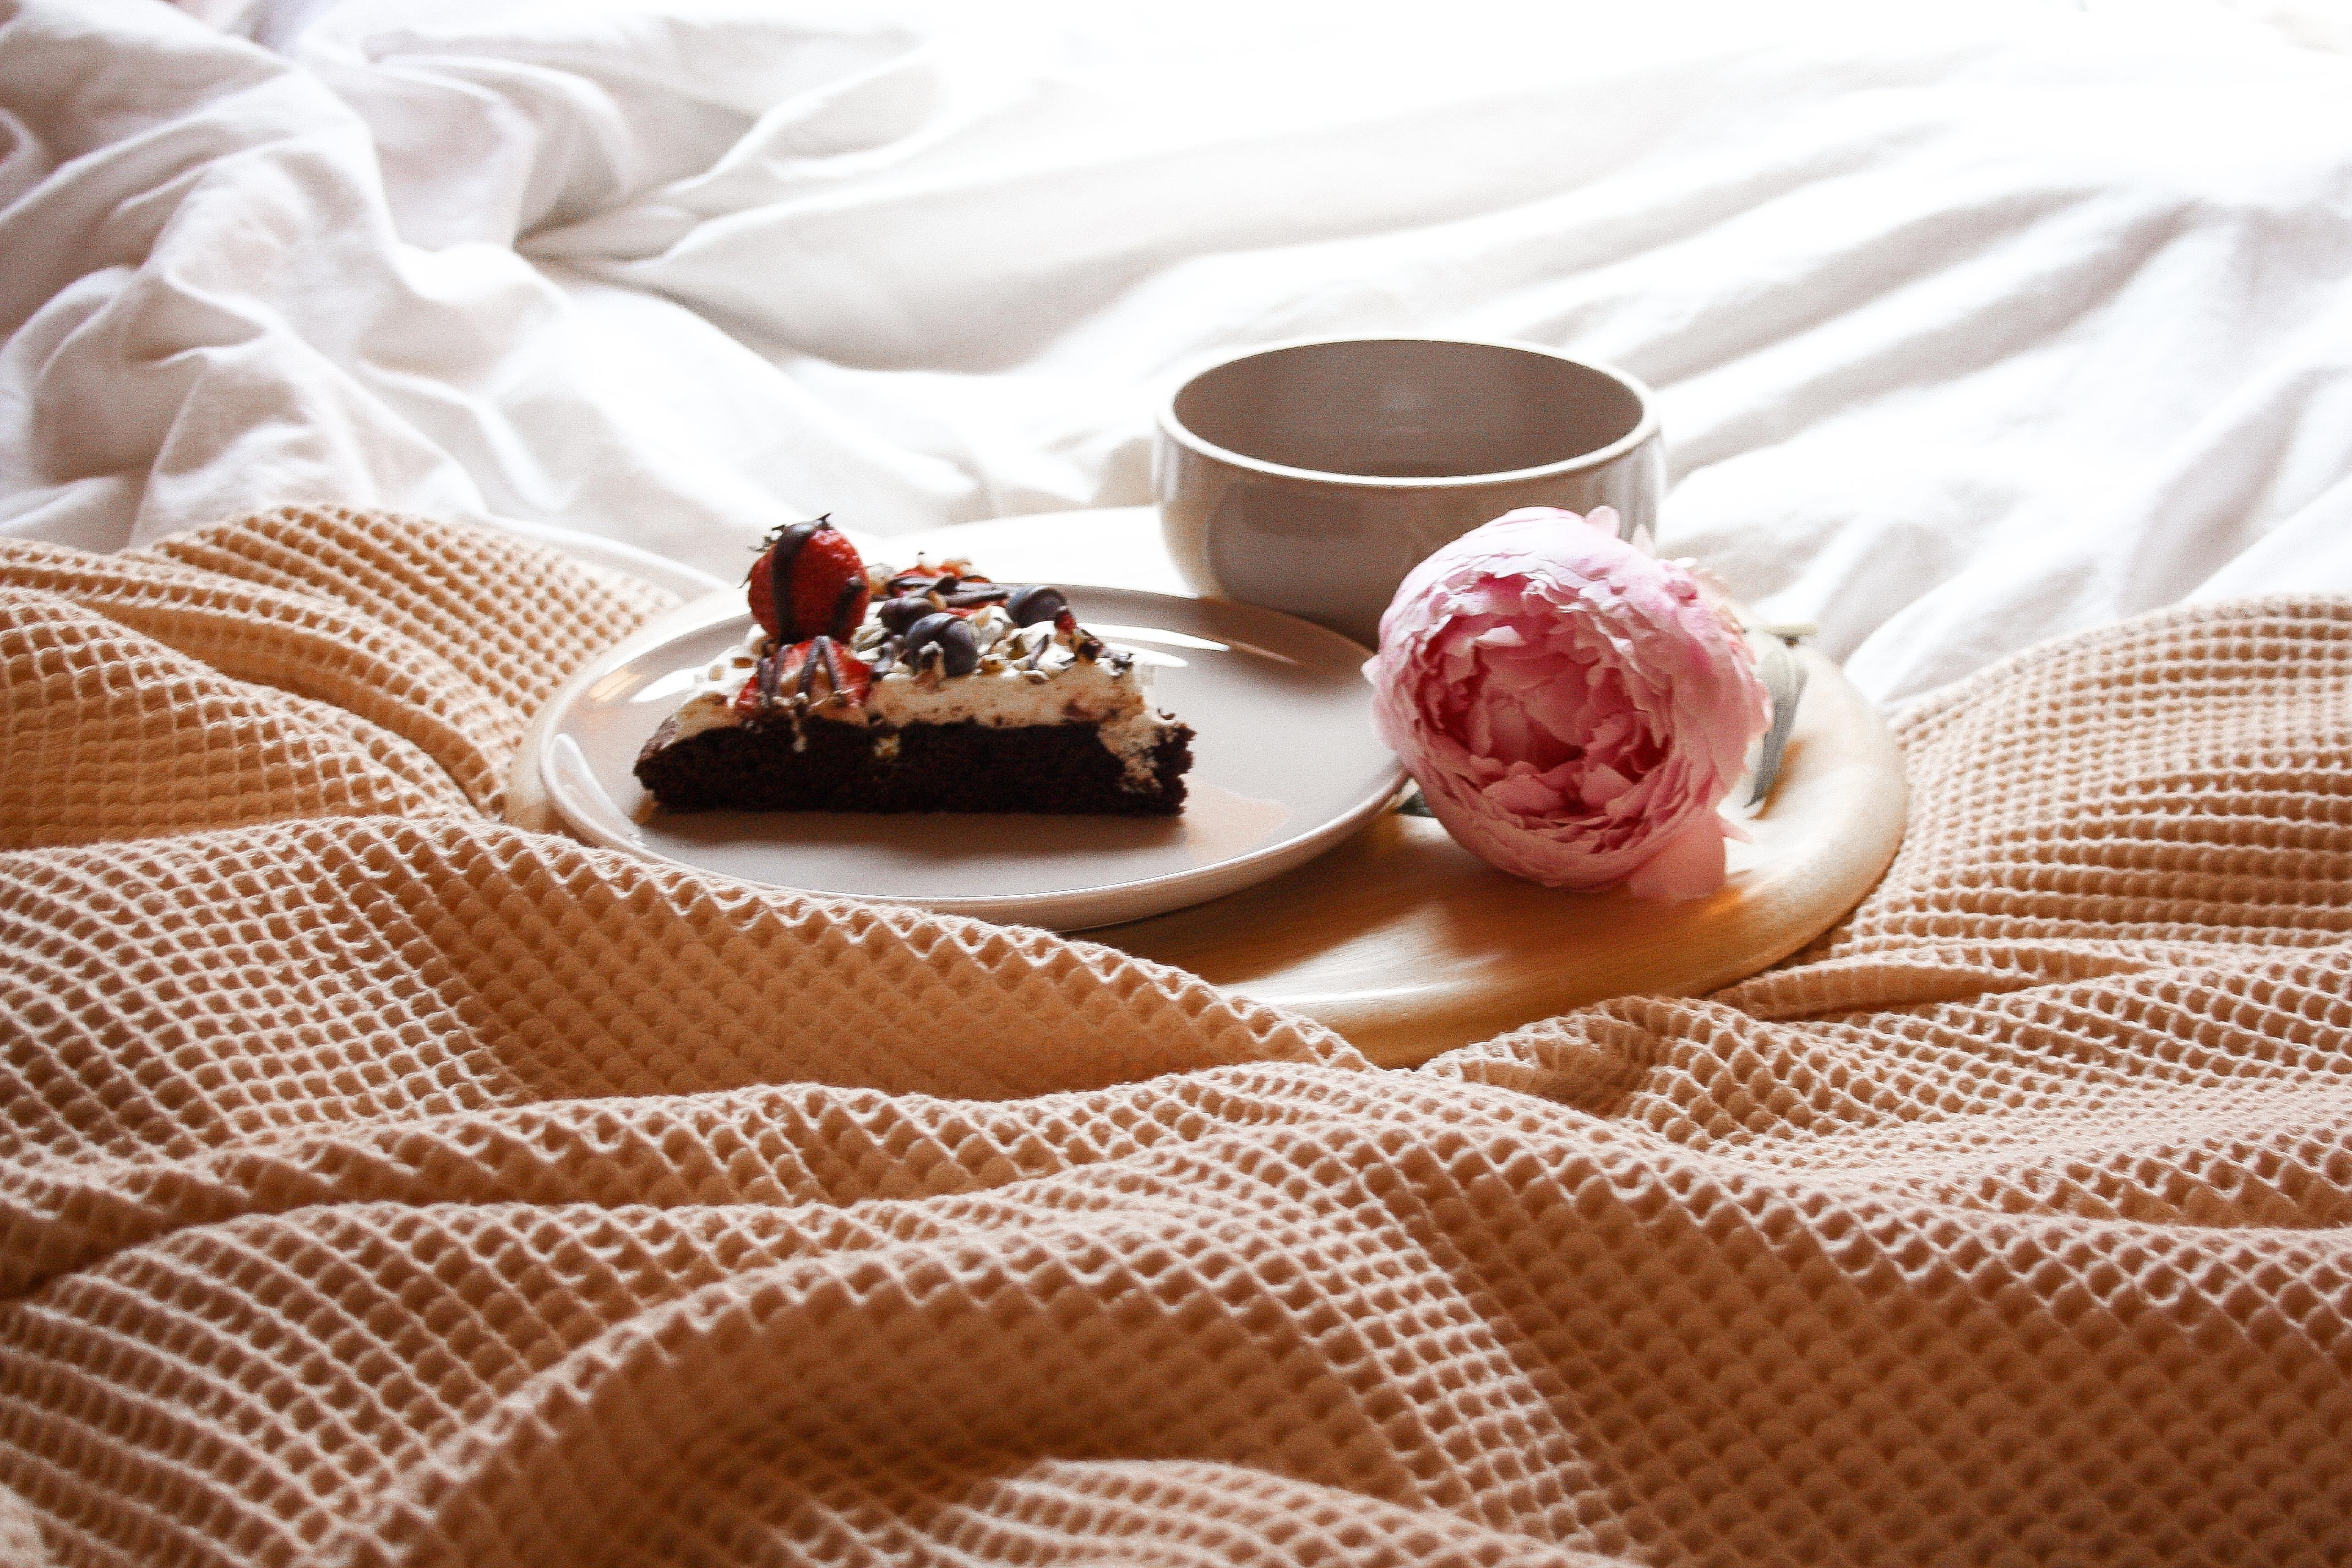 ♡ Guten Morgen ♡

#schlafzimmer #livingchallenge #coffee #frühstück #cake #backen 